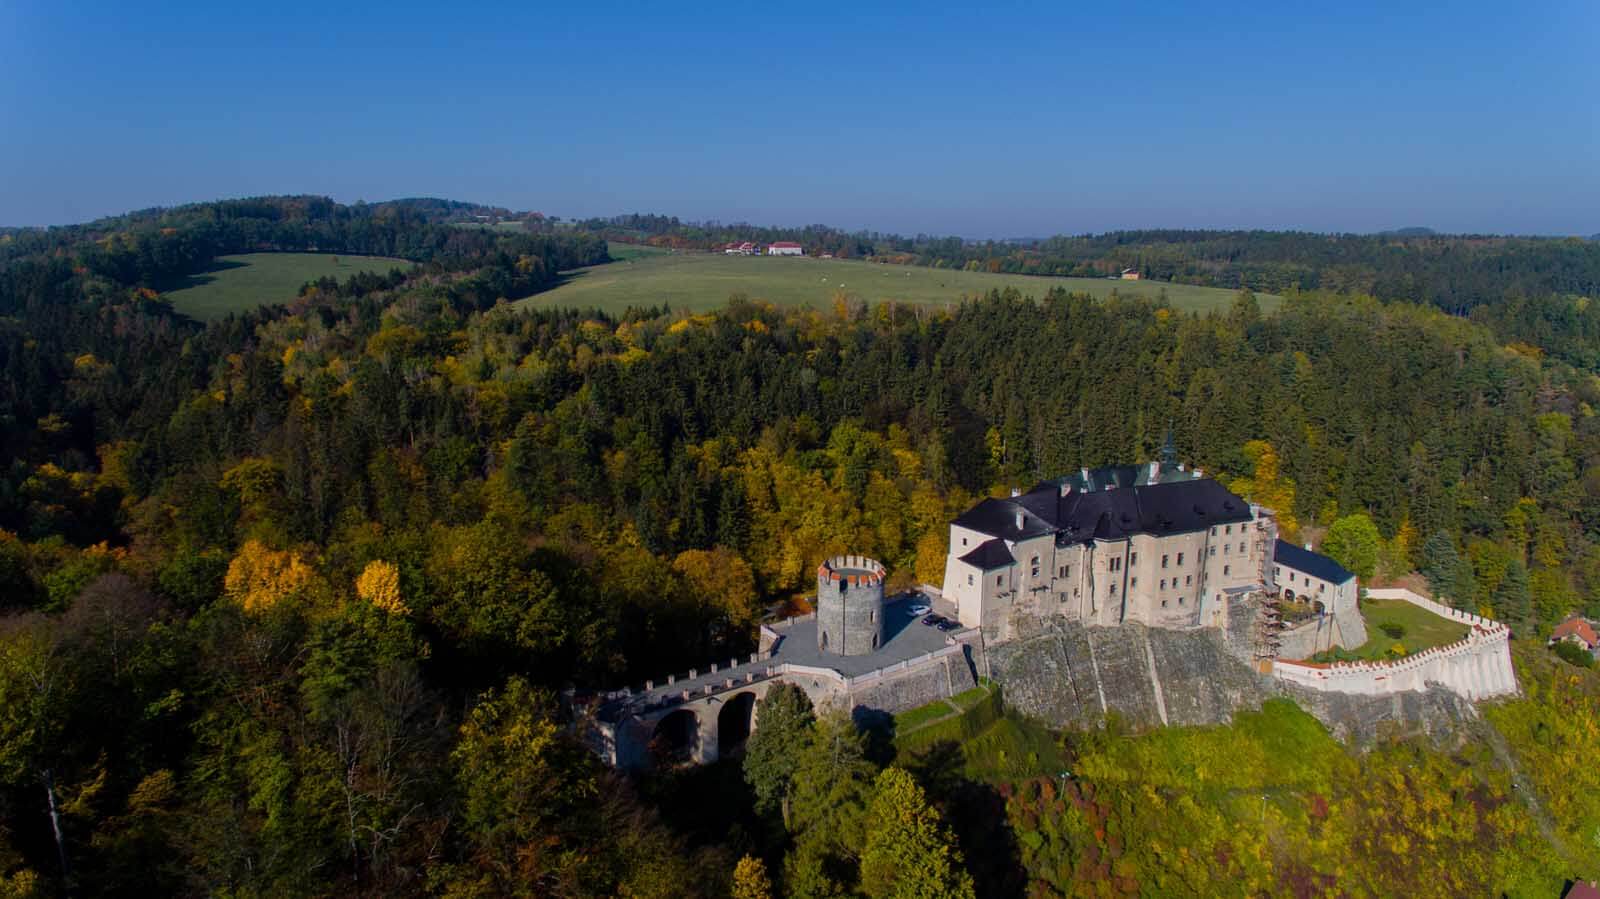 Cesky Sternberk Castle in Central Bohemia